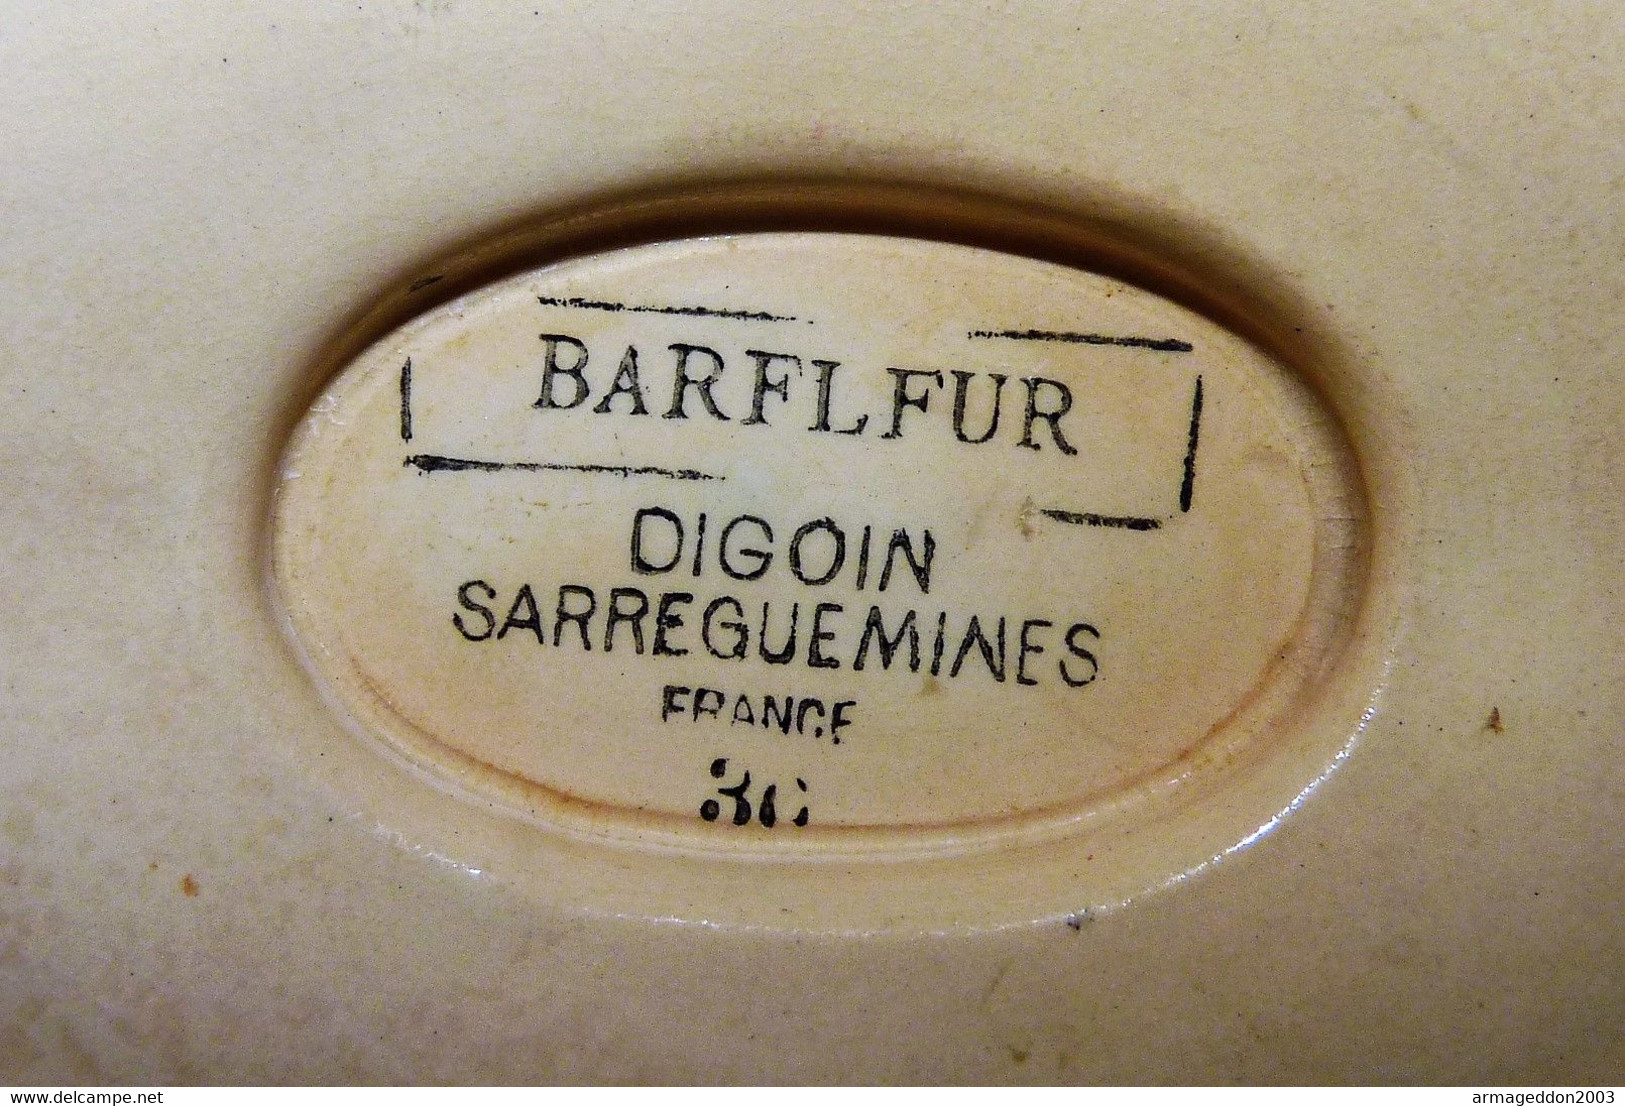 SUPERBE ANCIENNE SAUCIERE SUR PORTANT DIGOIN SARREGUEMINES MODELE BARFLEUR - Digoin (FRA)